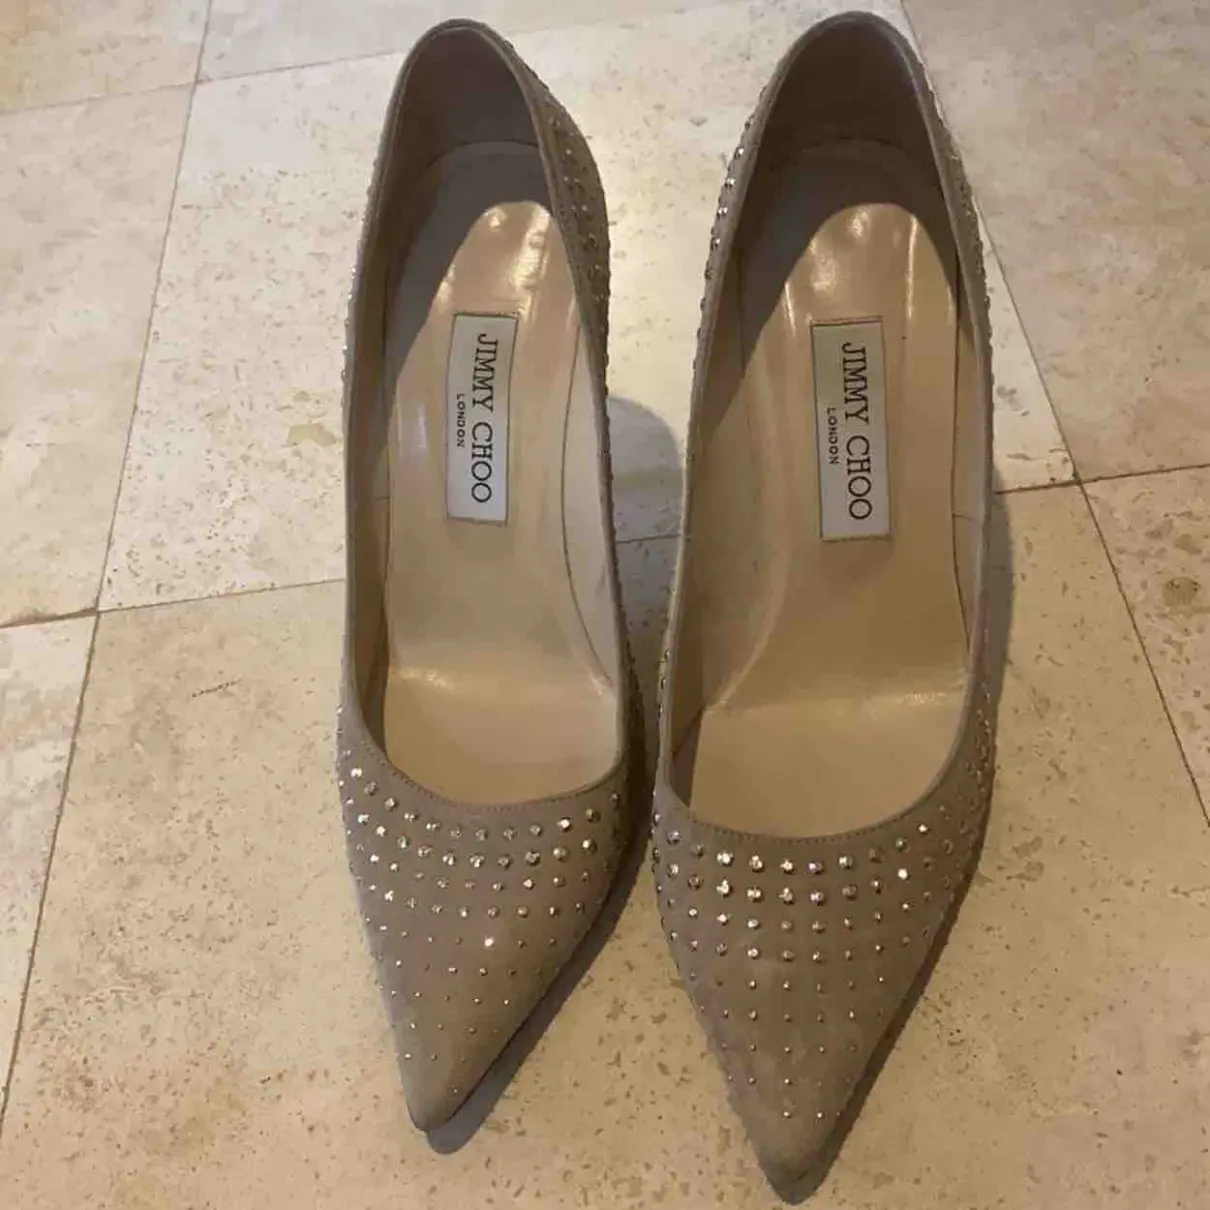 Buy Jimmy Choo Anouk heels online